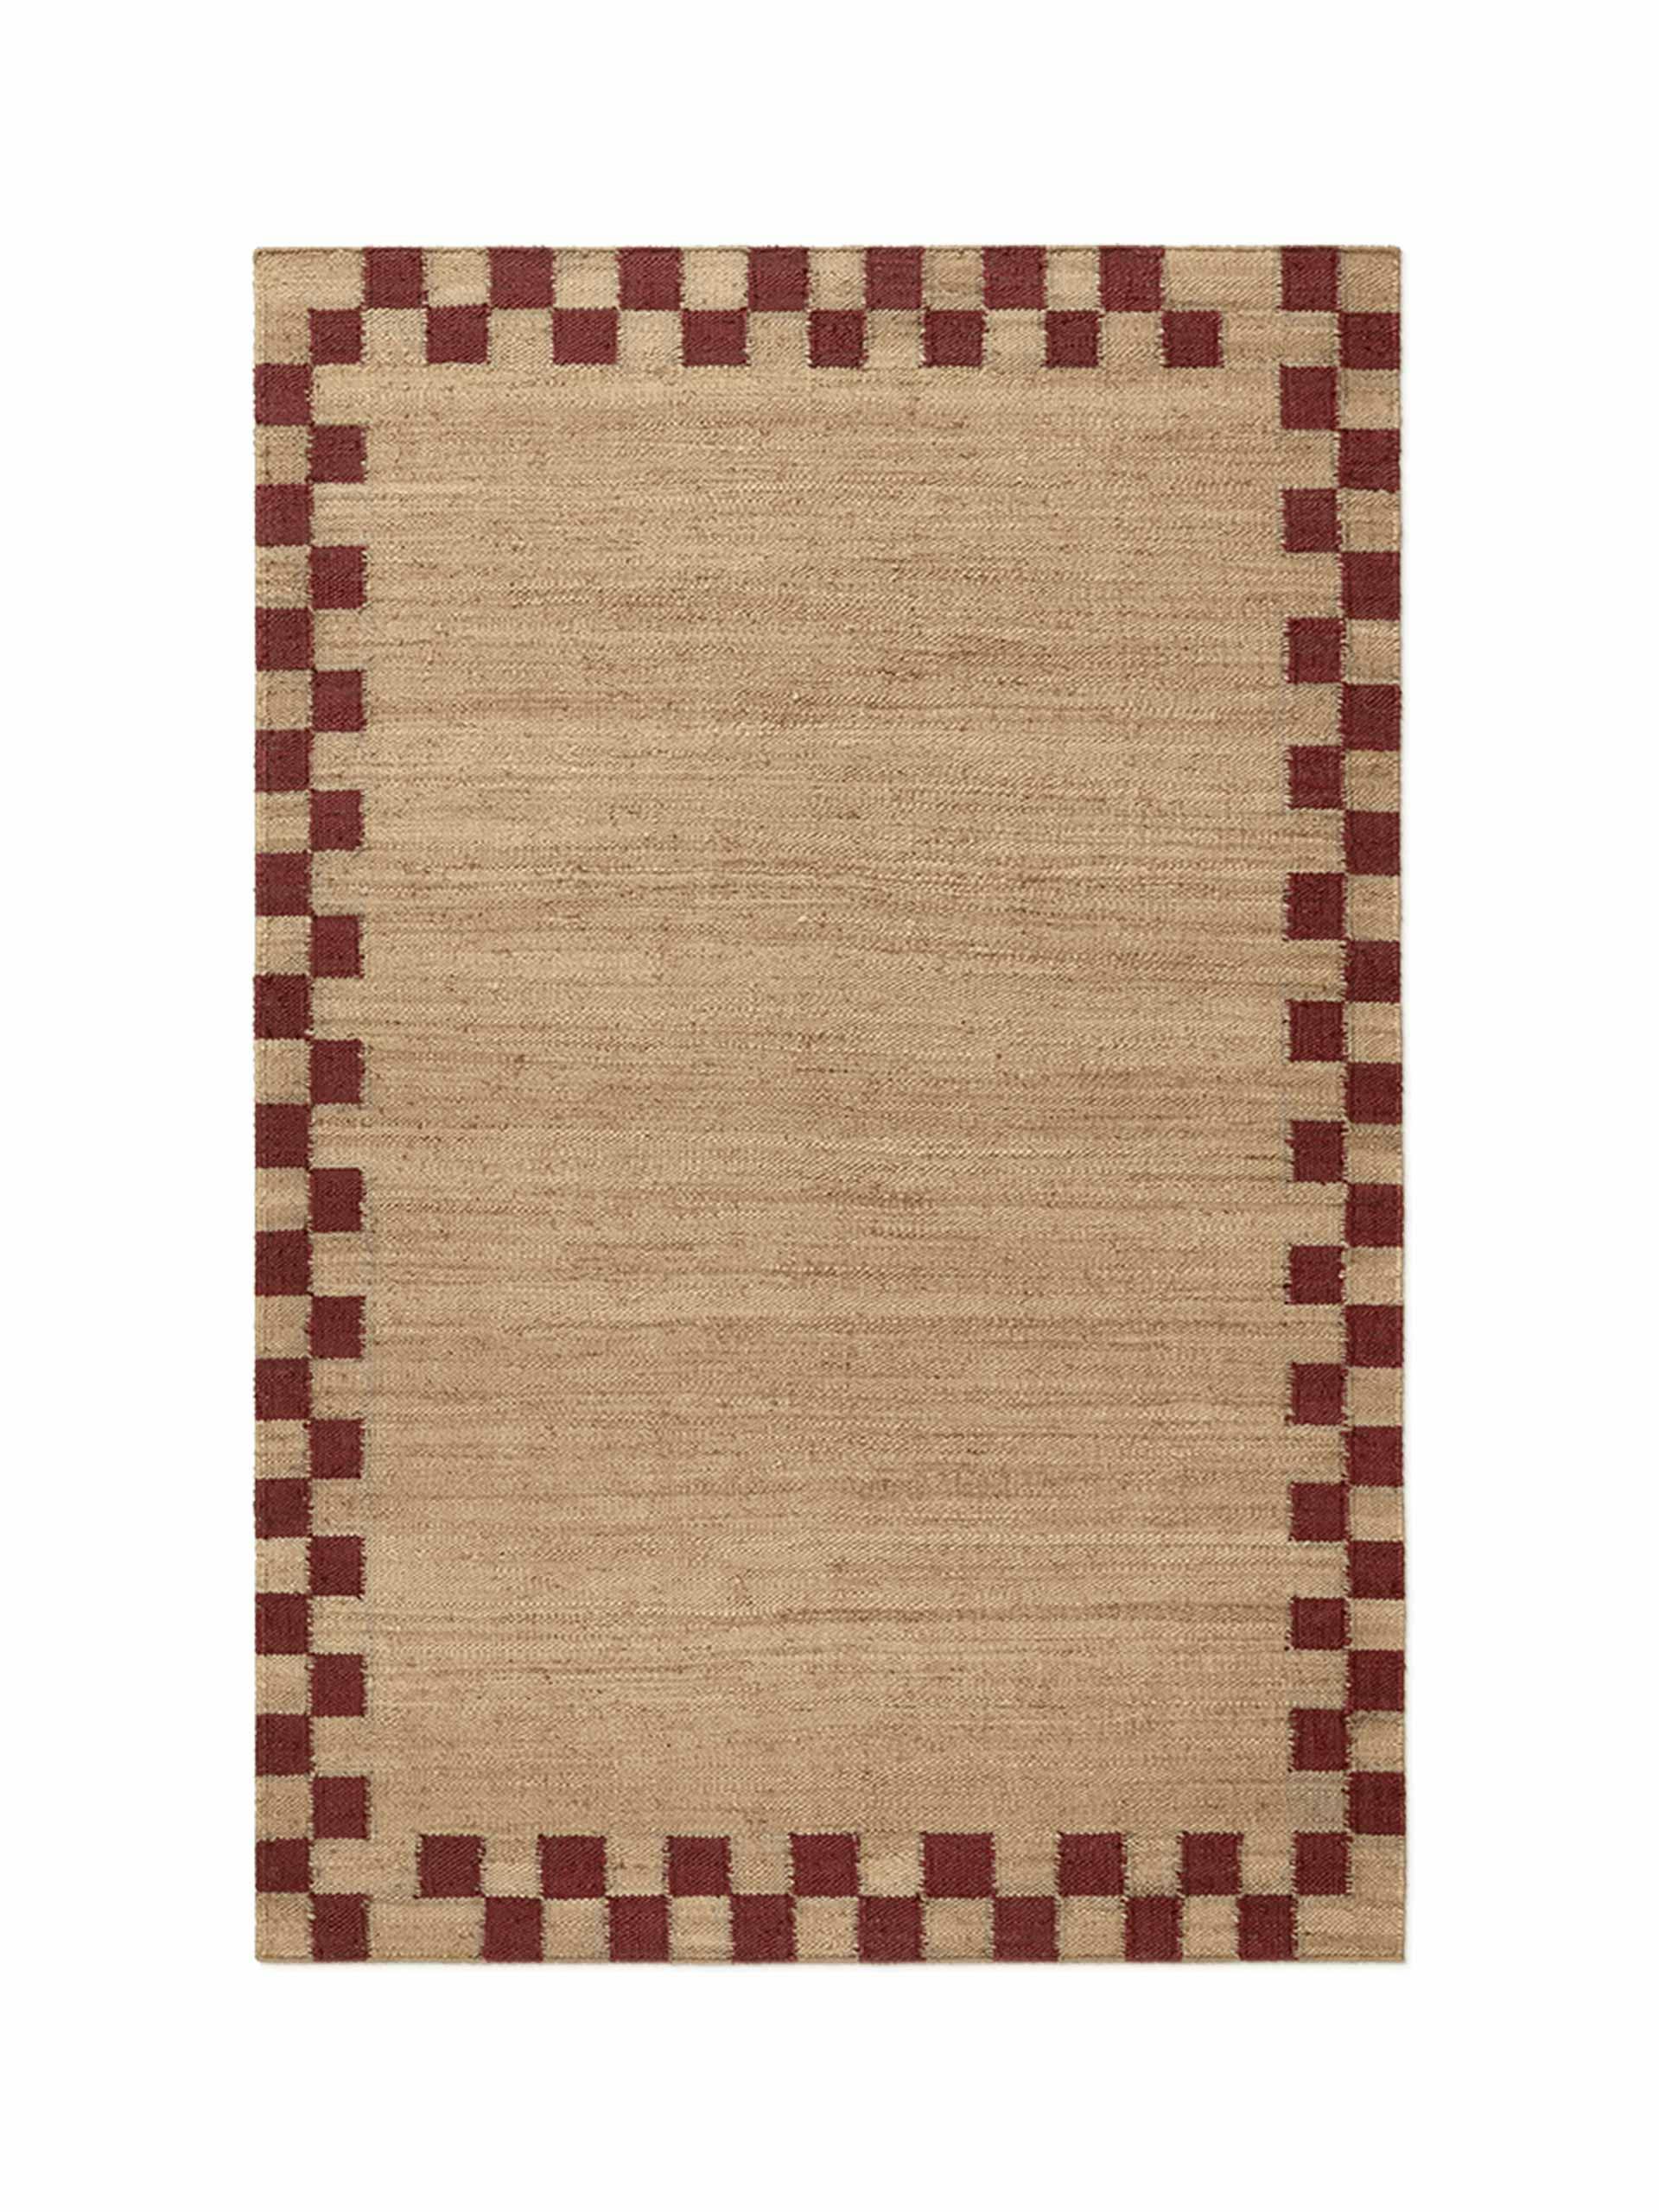 Minimalist rug